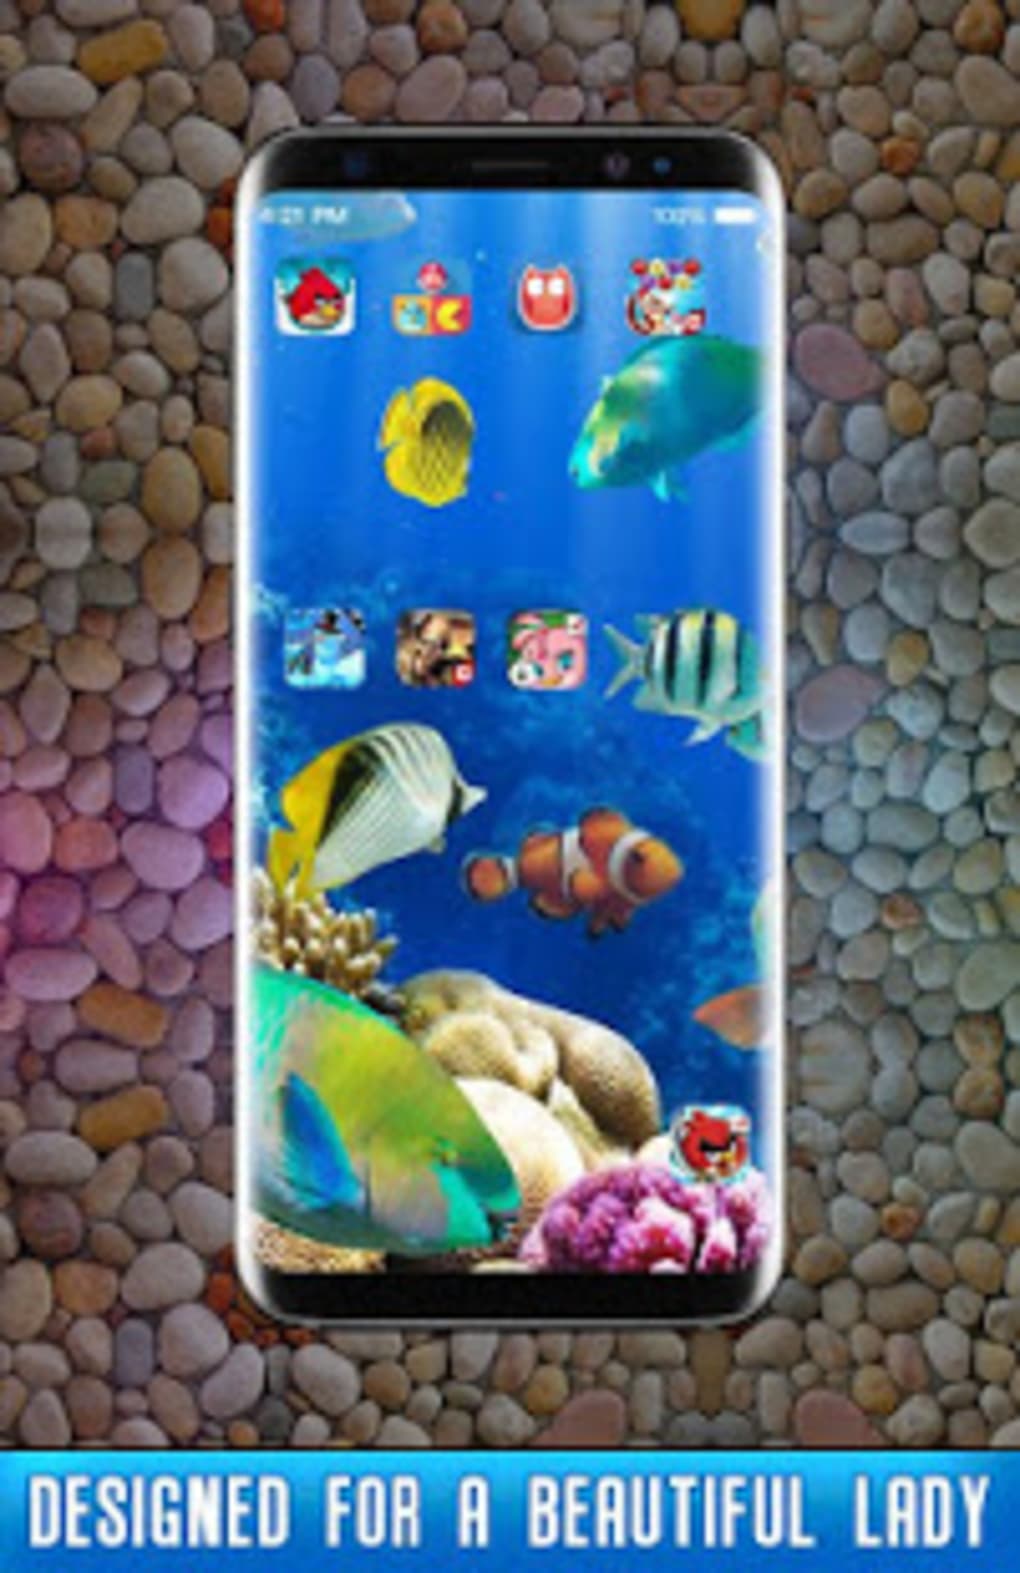 50+] Beautiful Fish Wallpaper - WallpaperSafari